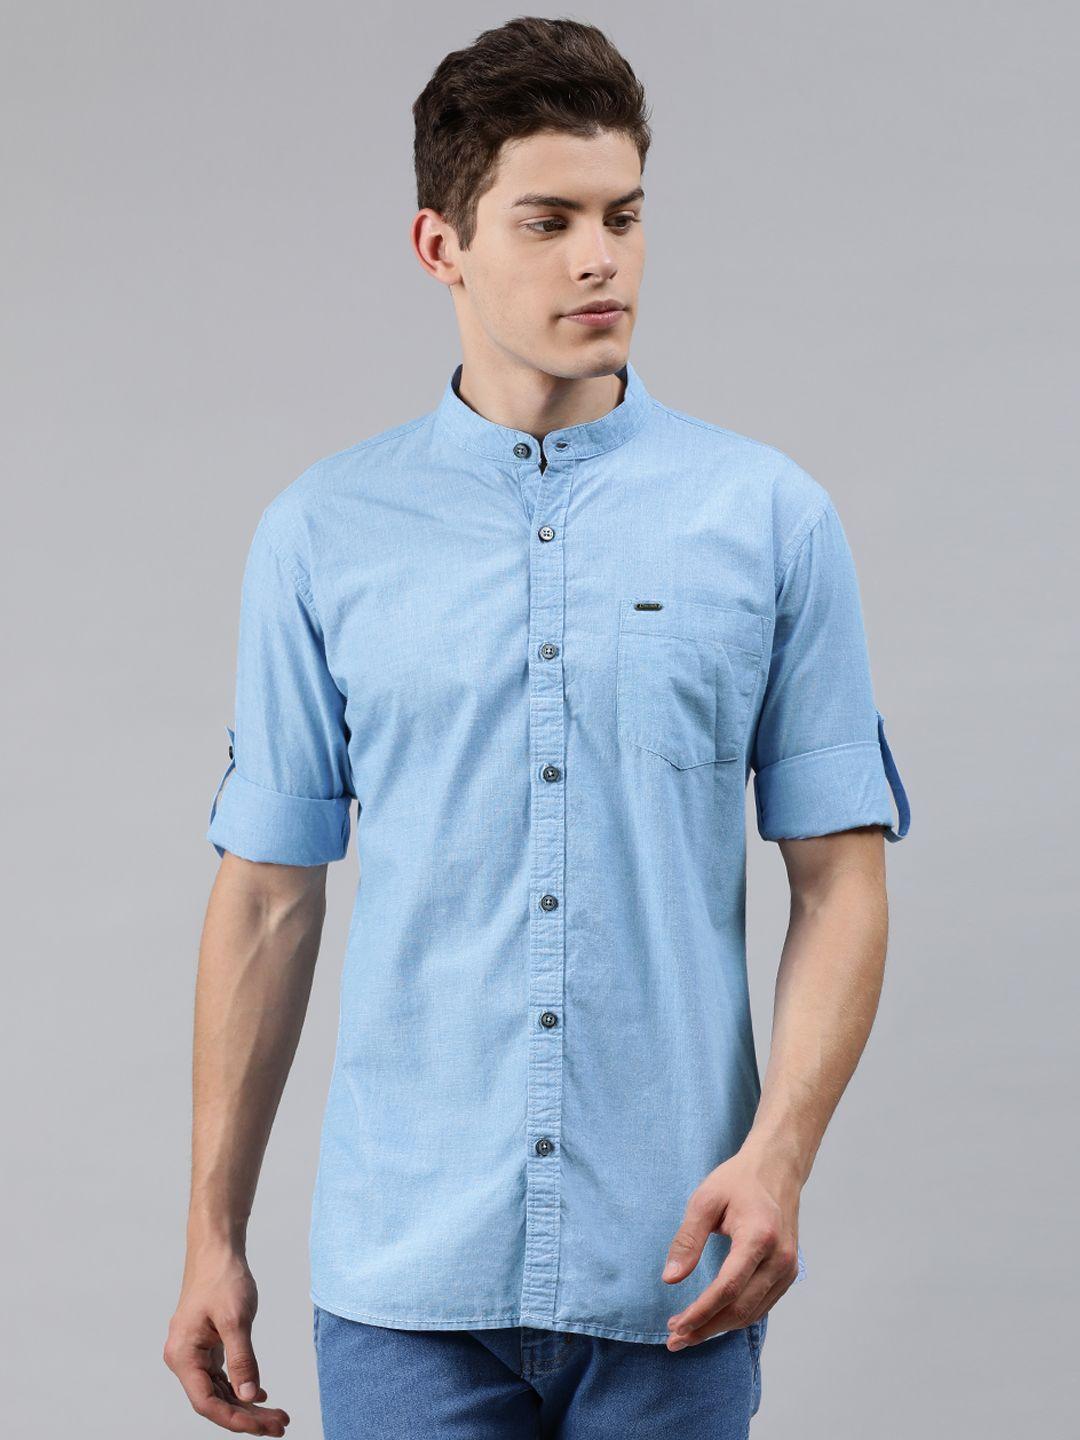 urbano fashion men blue slim fit solid casual shirt